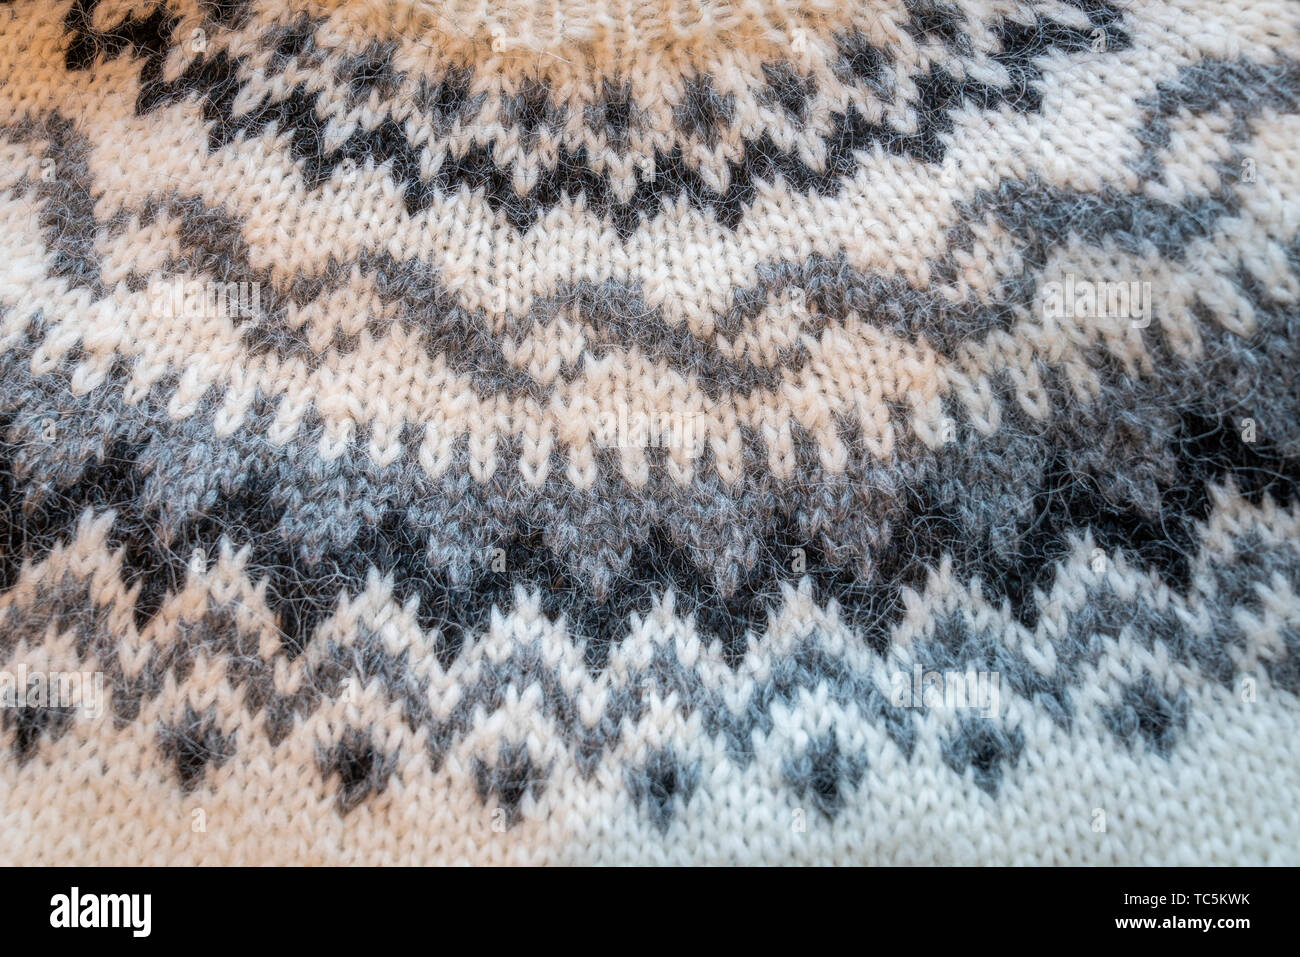 Chandails de laine traditionnels islandais, Islande la laine Lopi fabriqués à partir de la toison du mouton islandais. Banque D'Images